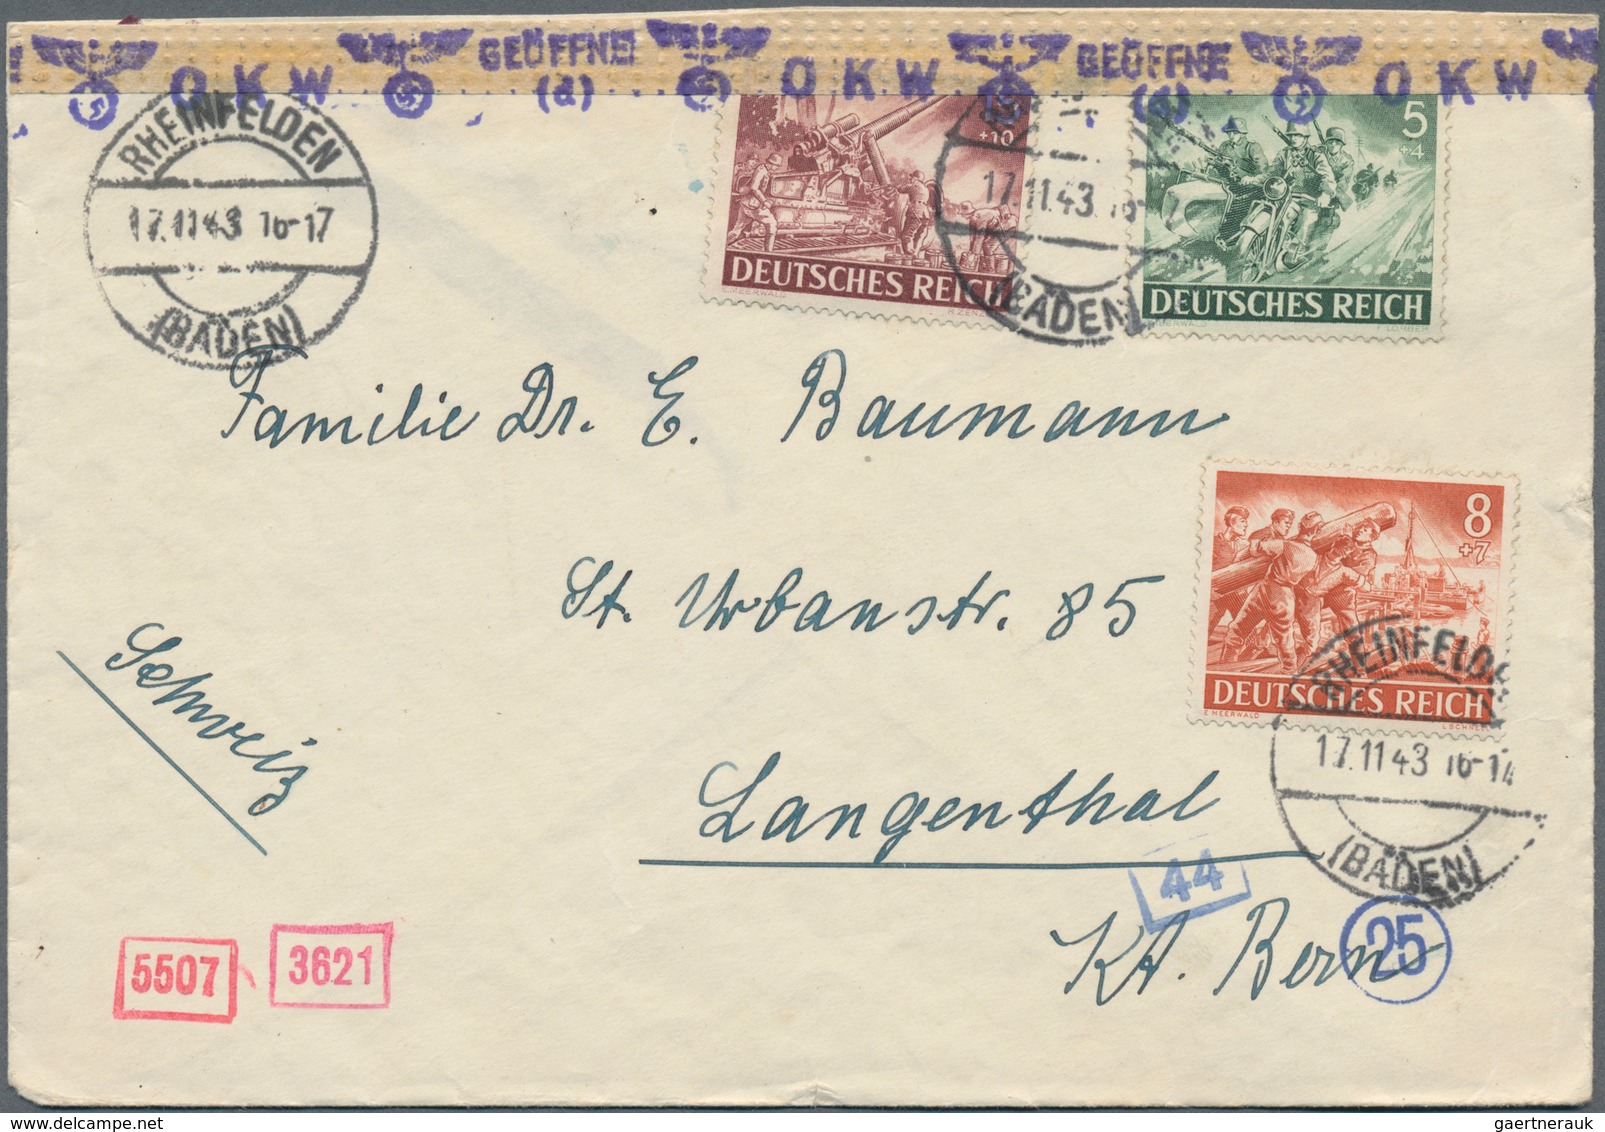 Deutsches Reich - 3. Reich: 1933/1945, rd. 300 Briefe und Karten, dabei Einschreiben, Auslandspost,